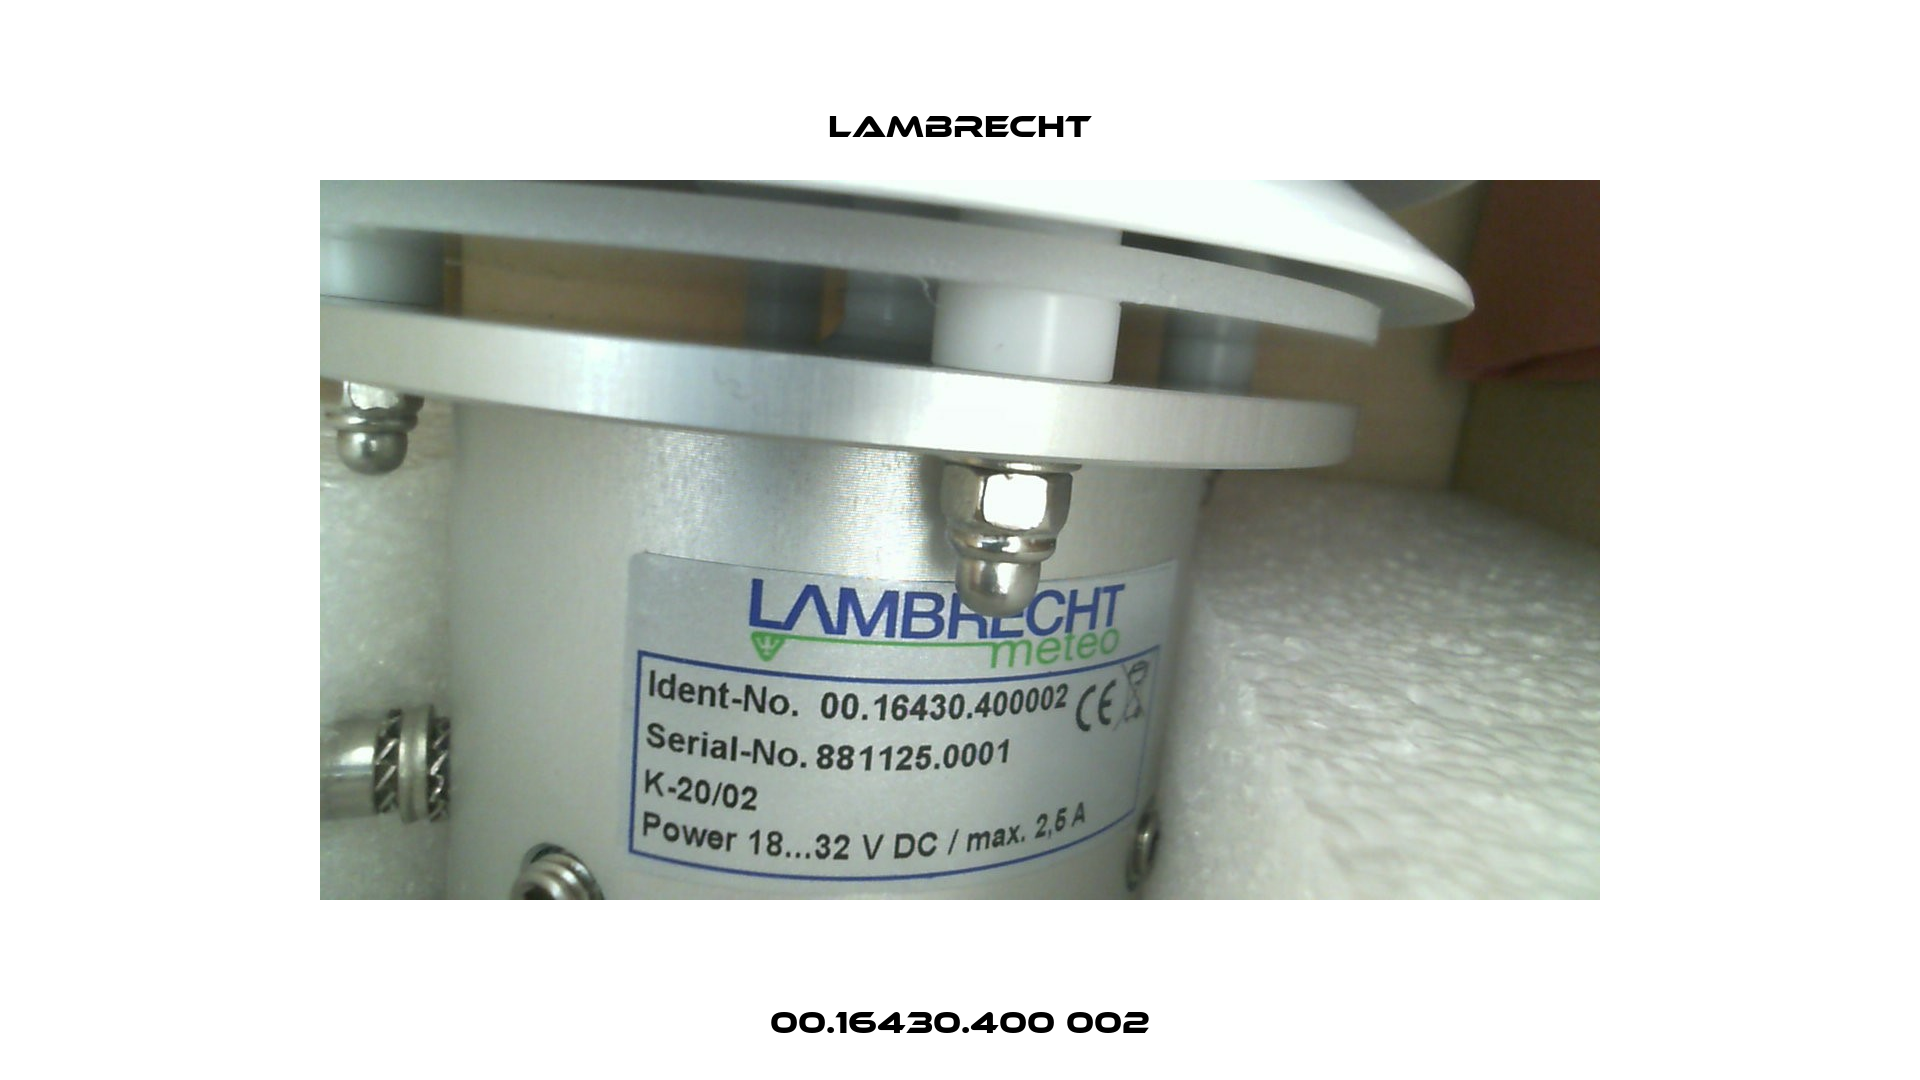 00.16430.400 002 Lambrecht